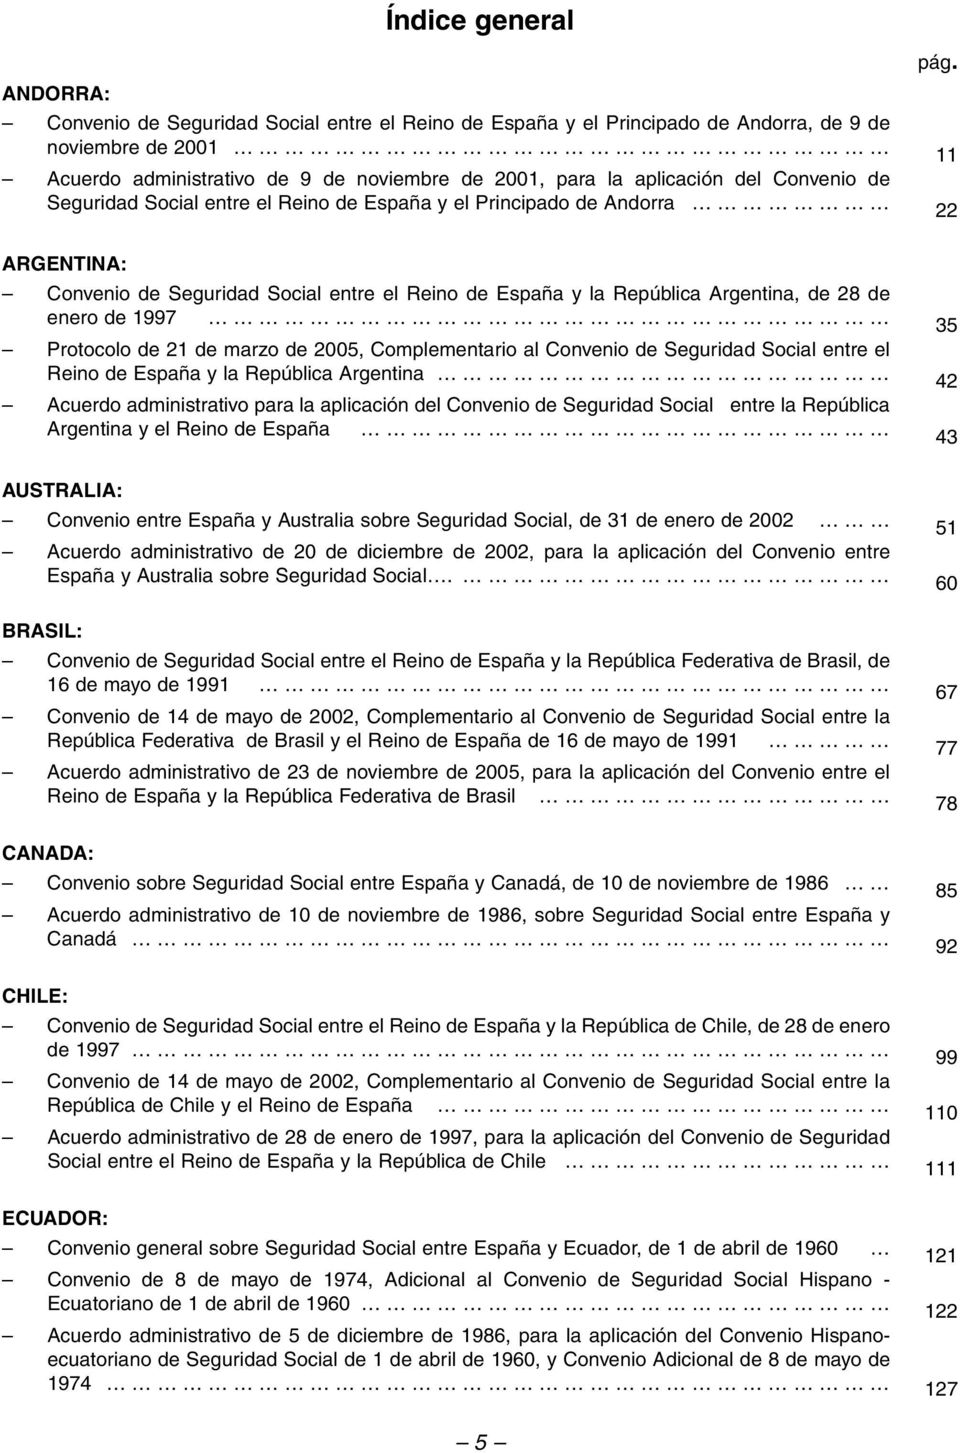 ARGENTINA: Convenio de Seguridad Social entre el Reino de España y la República Argentina, de 28 de enero de 1997 35 Protocolo de 21 de marzo de 2005, Complementario al Convenio de Seguridad Social